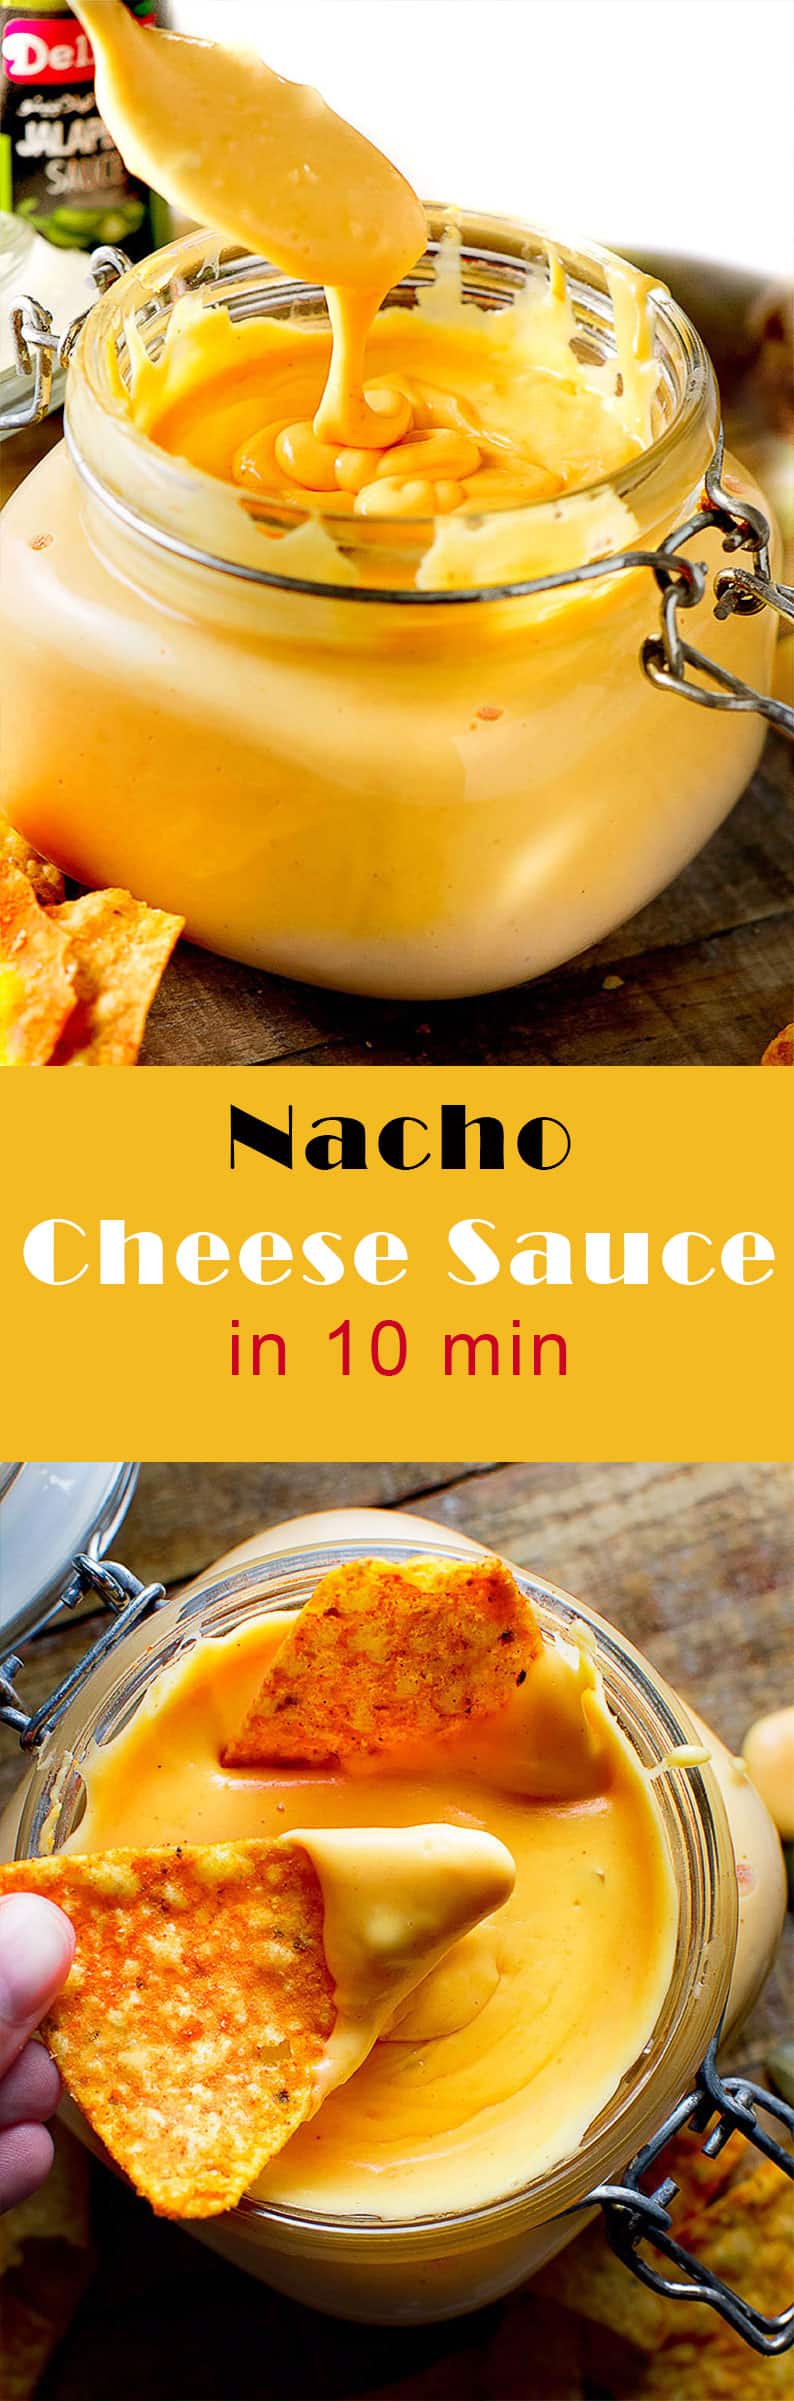 Nacho cheese sauce recipe